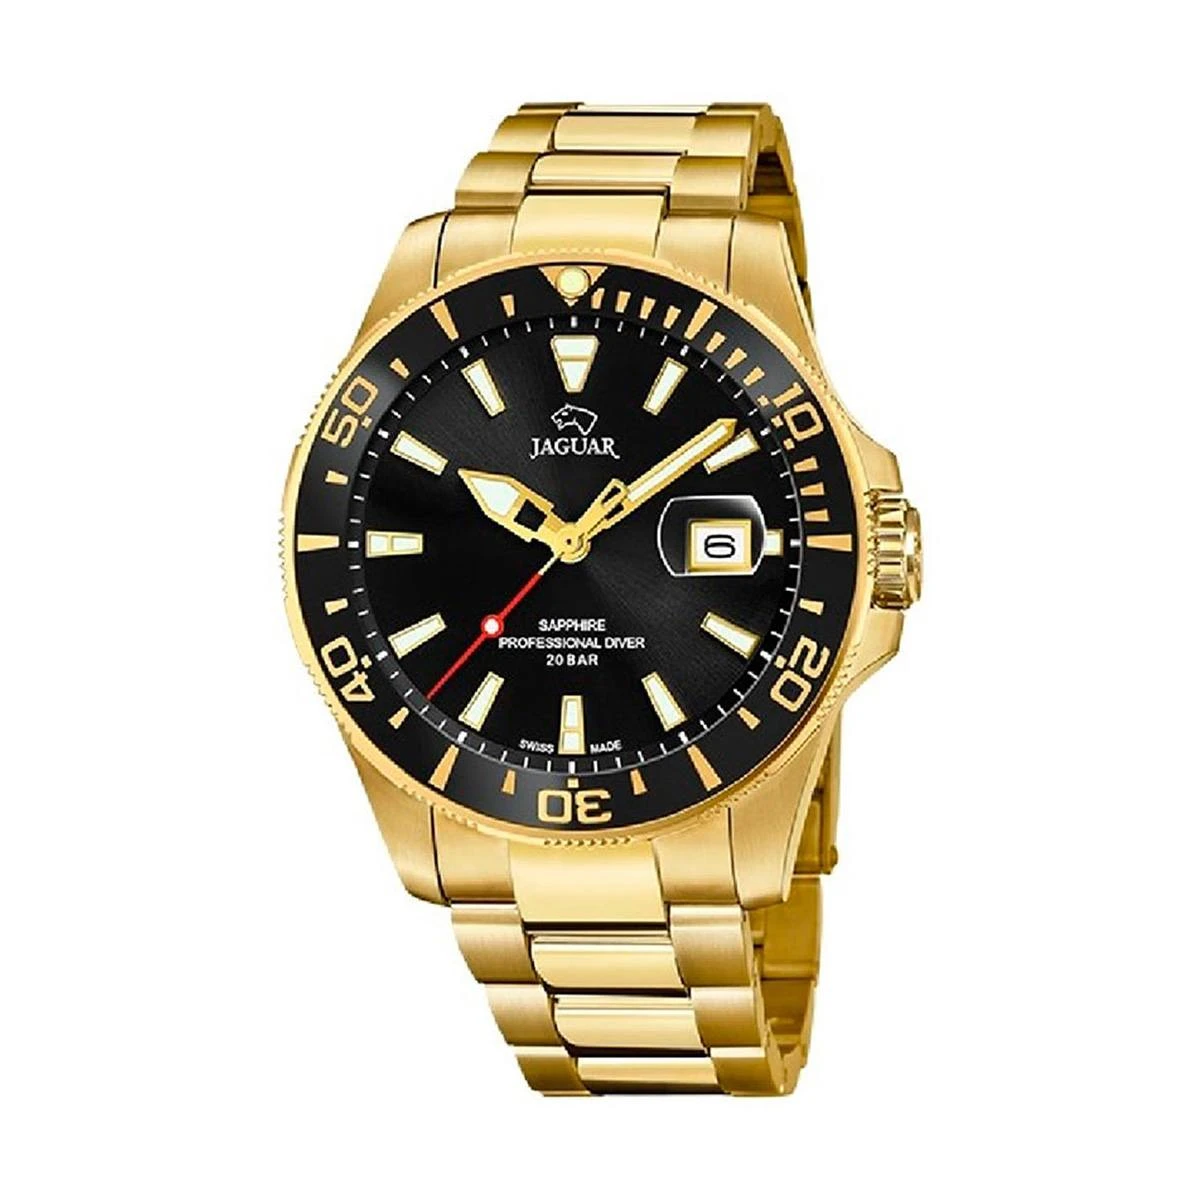 J877-3-1200x1200 - Най-добрите водолазни часовници - Аксесоари